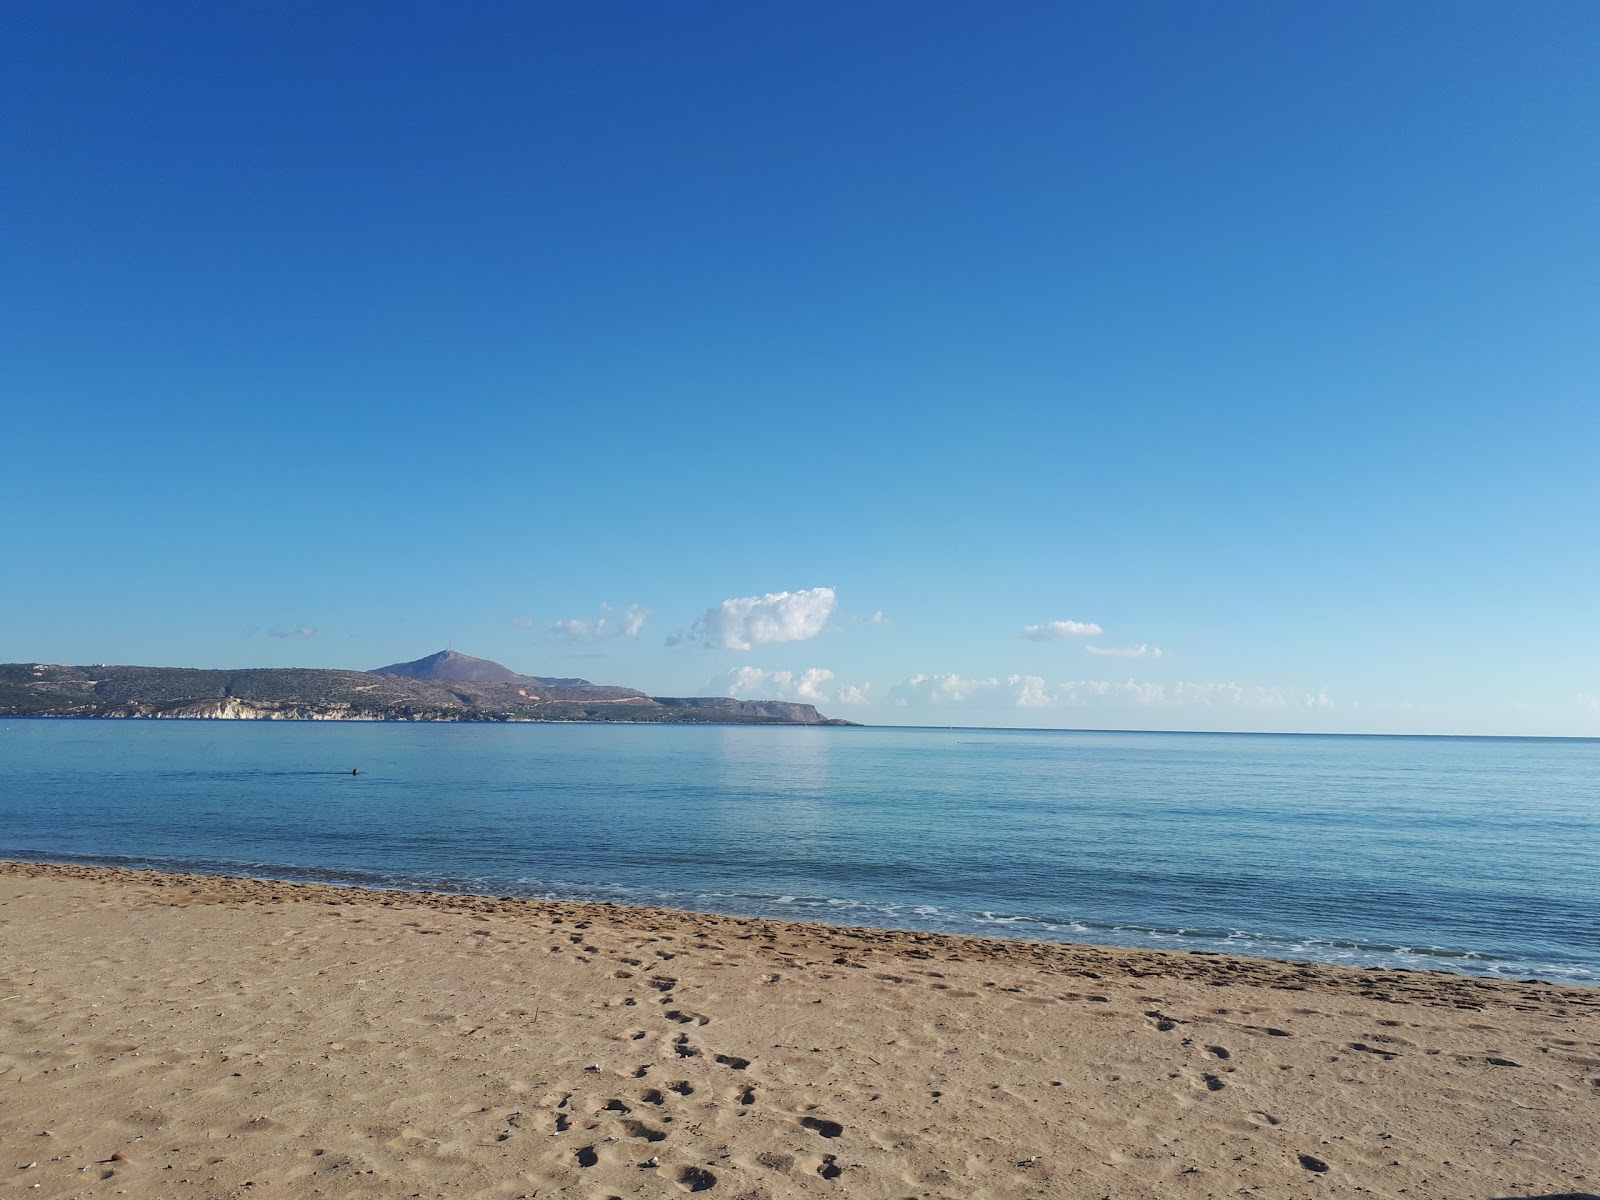 Zdjęcie Kolatsos beach - popularne miejsce wśród znawców relaksu